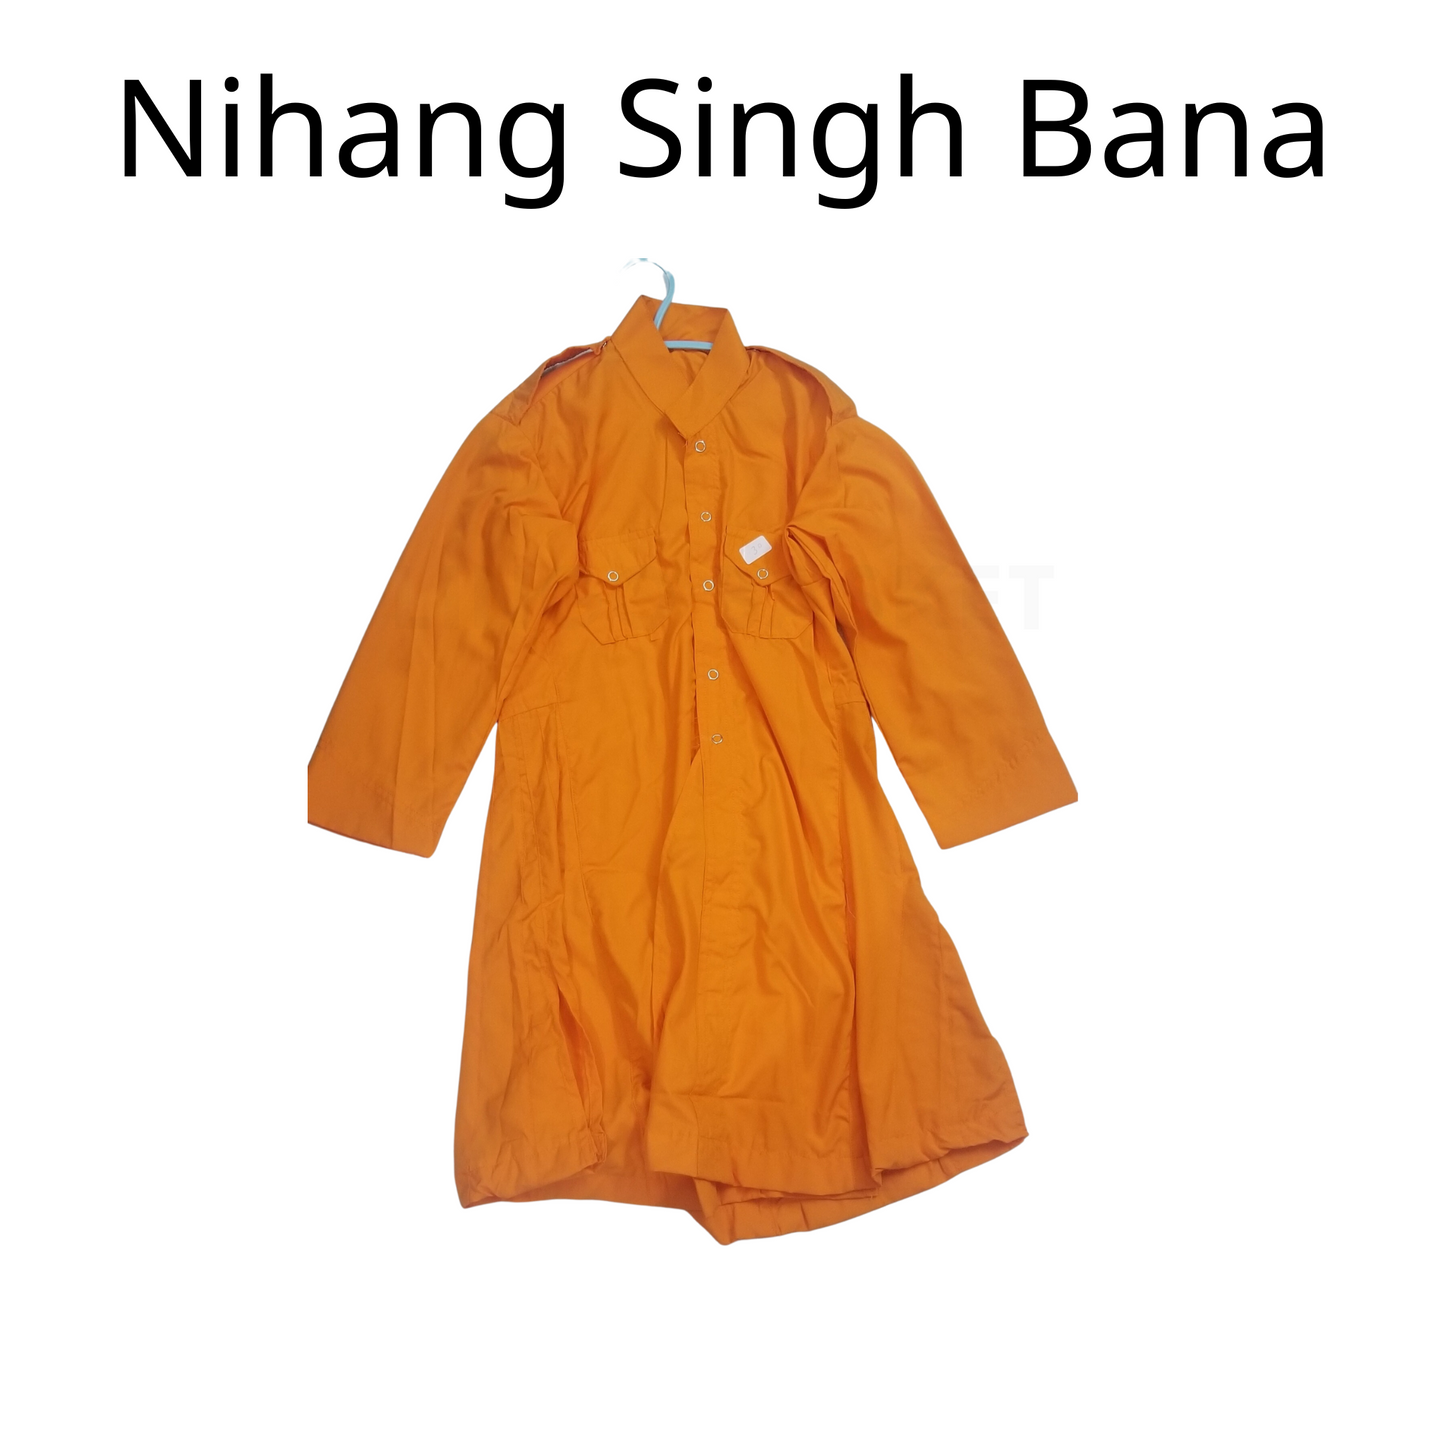 Nihang Singh Bana Kesari Colour